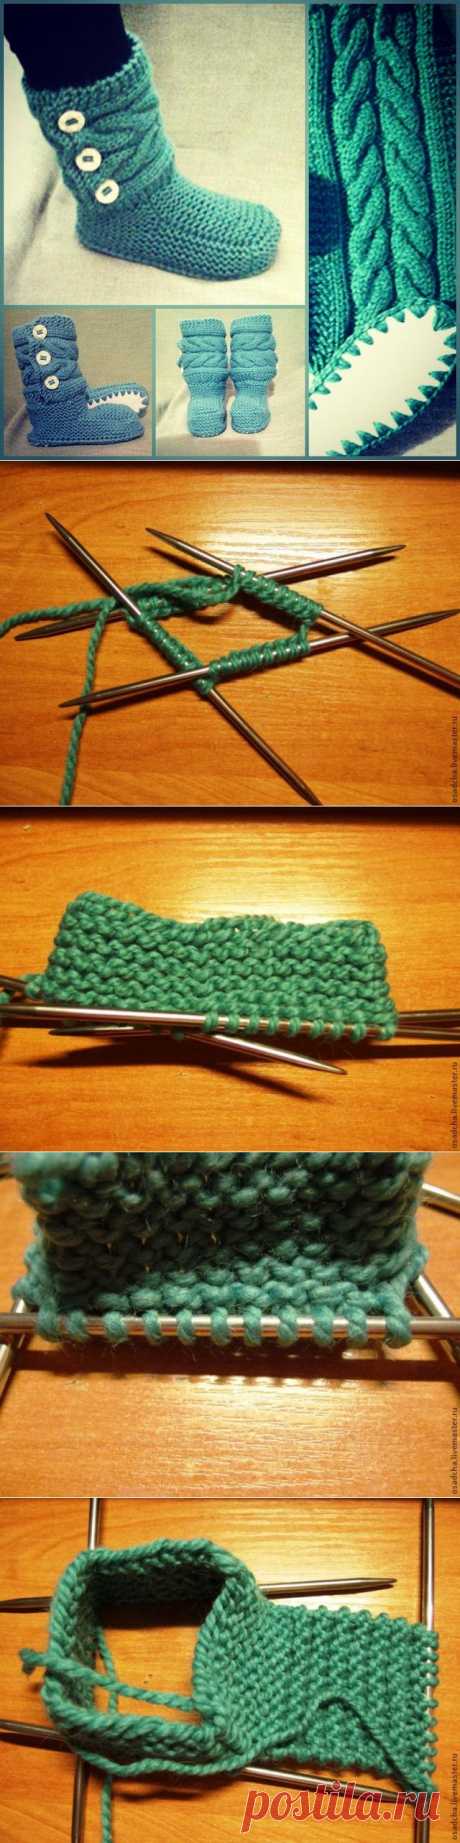 Вязание башмачка-основы для домашних сапожек. Автор мк Осадча Наталья